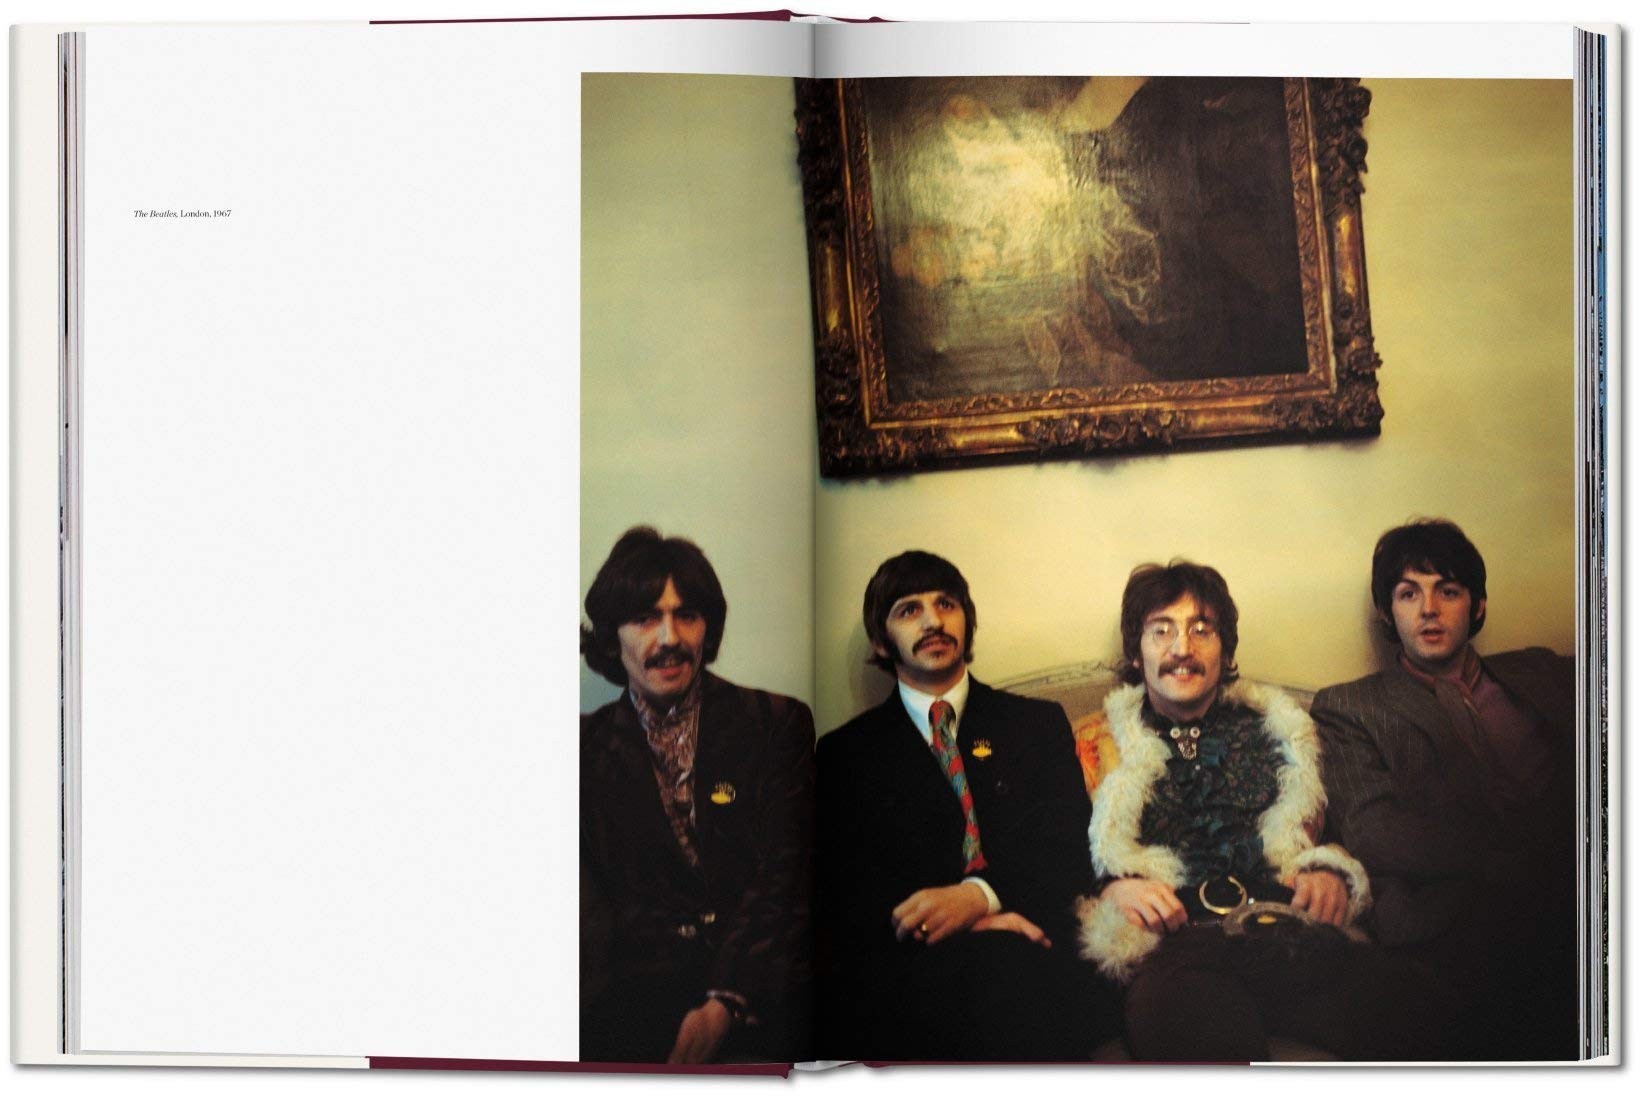 Remembering Linda McCartney - Beatles in London